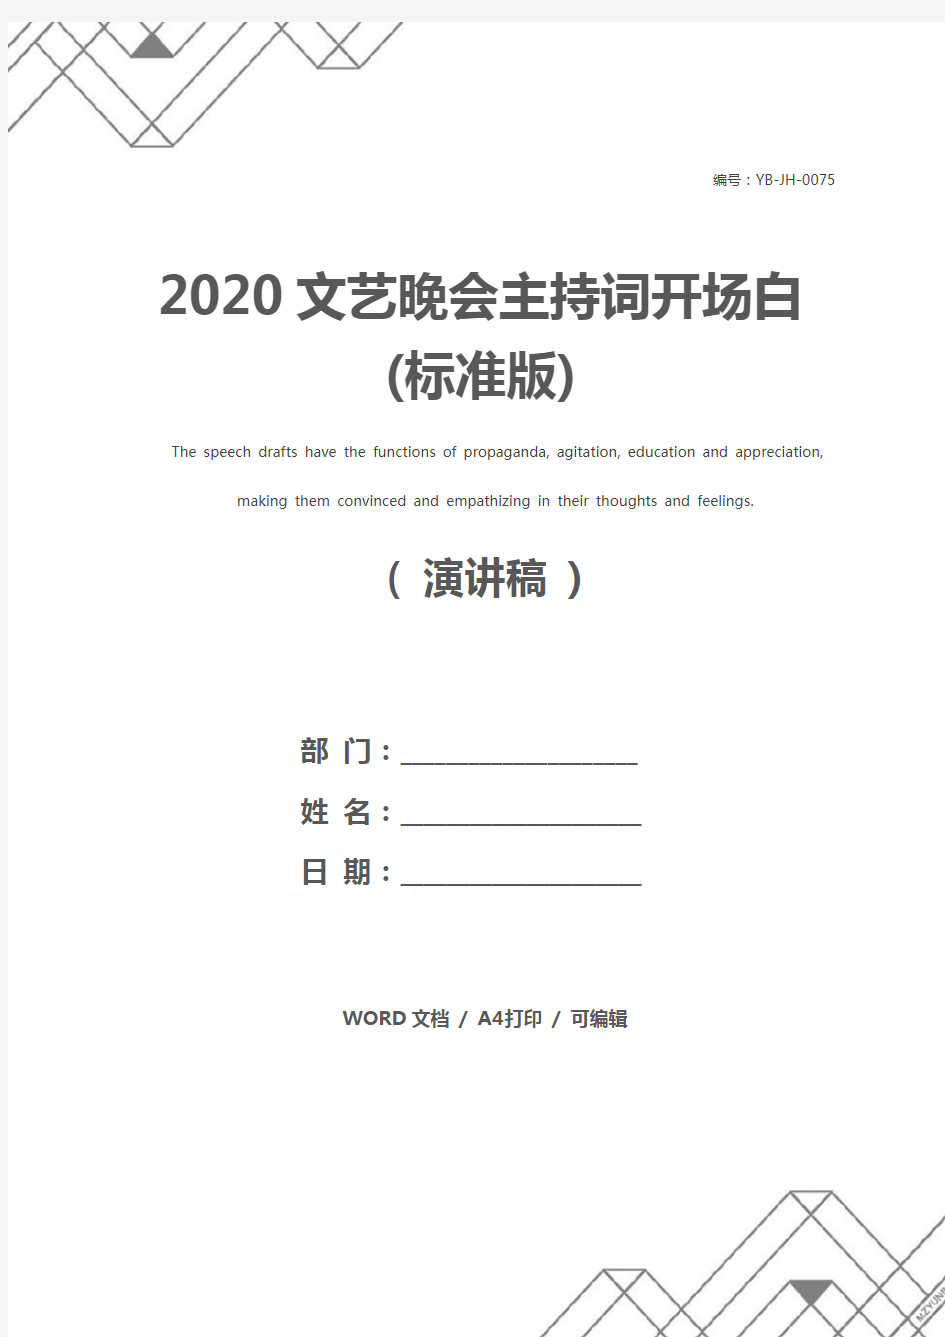 2020文艺晚会主持词开场白(标准版)